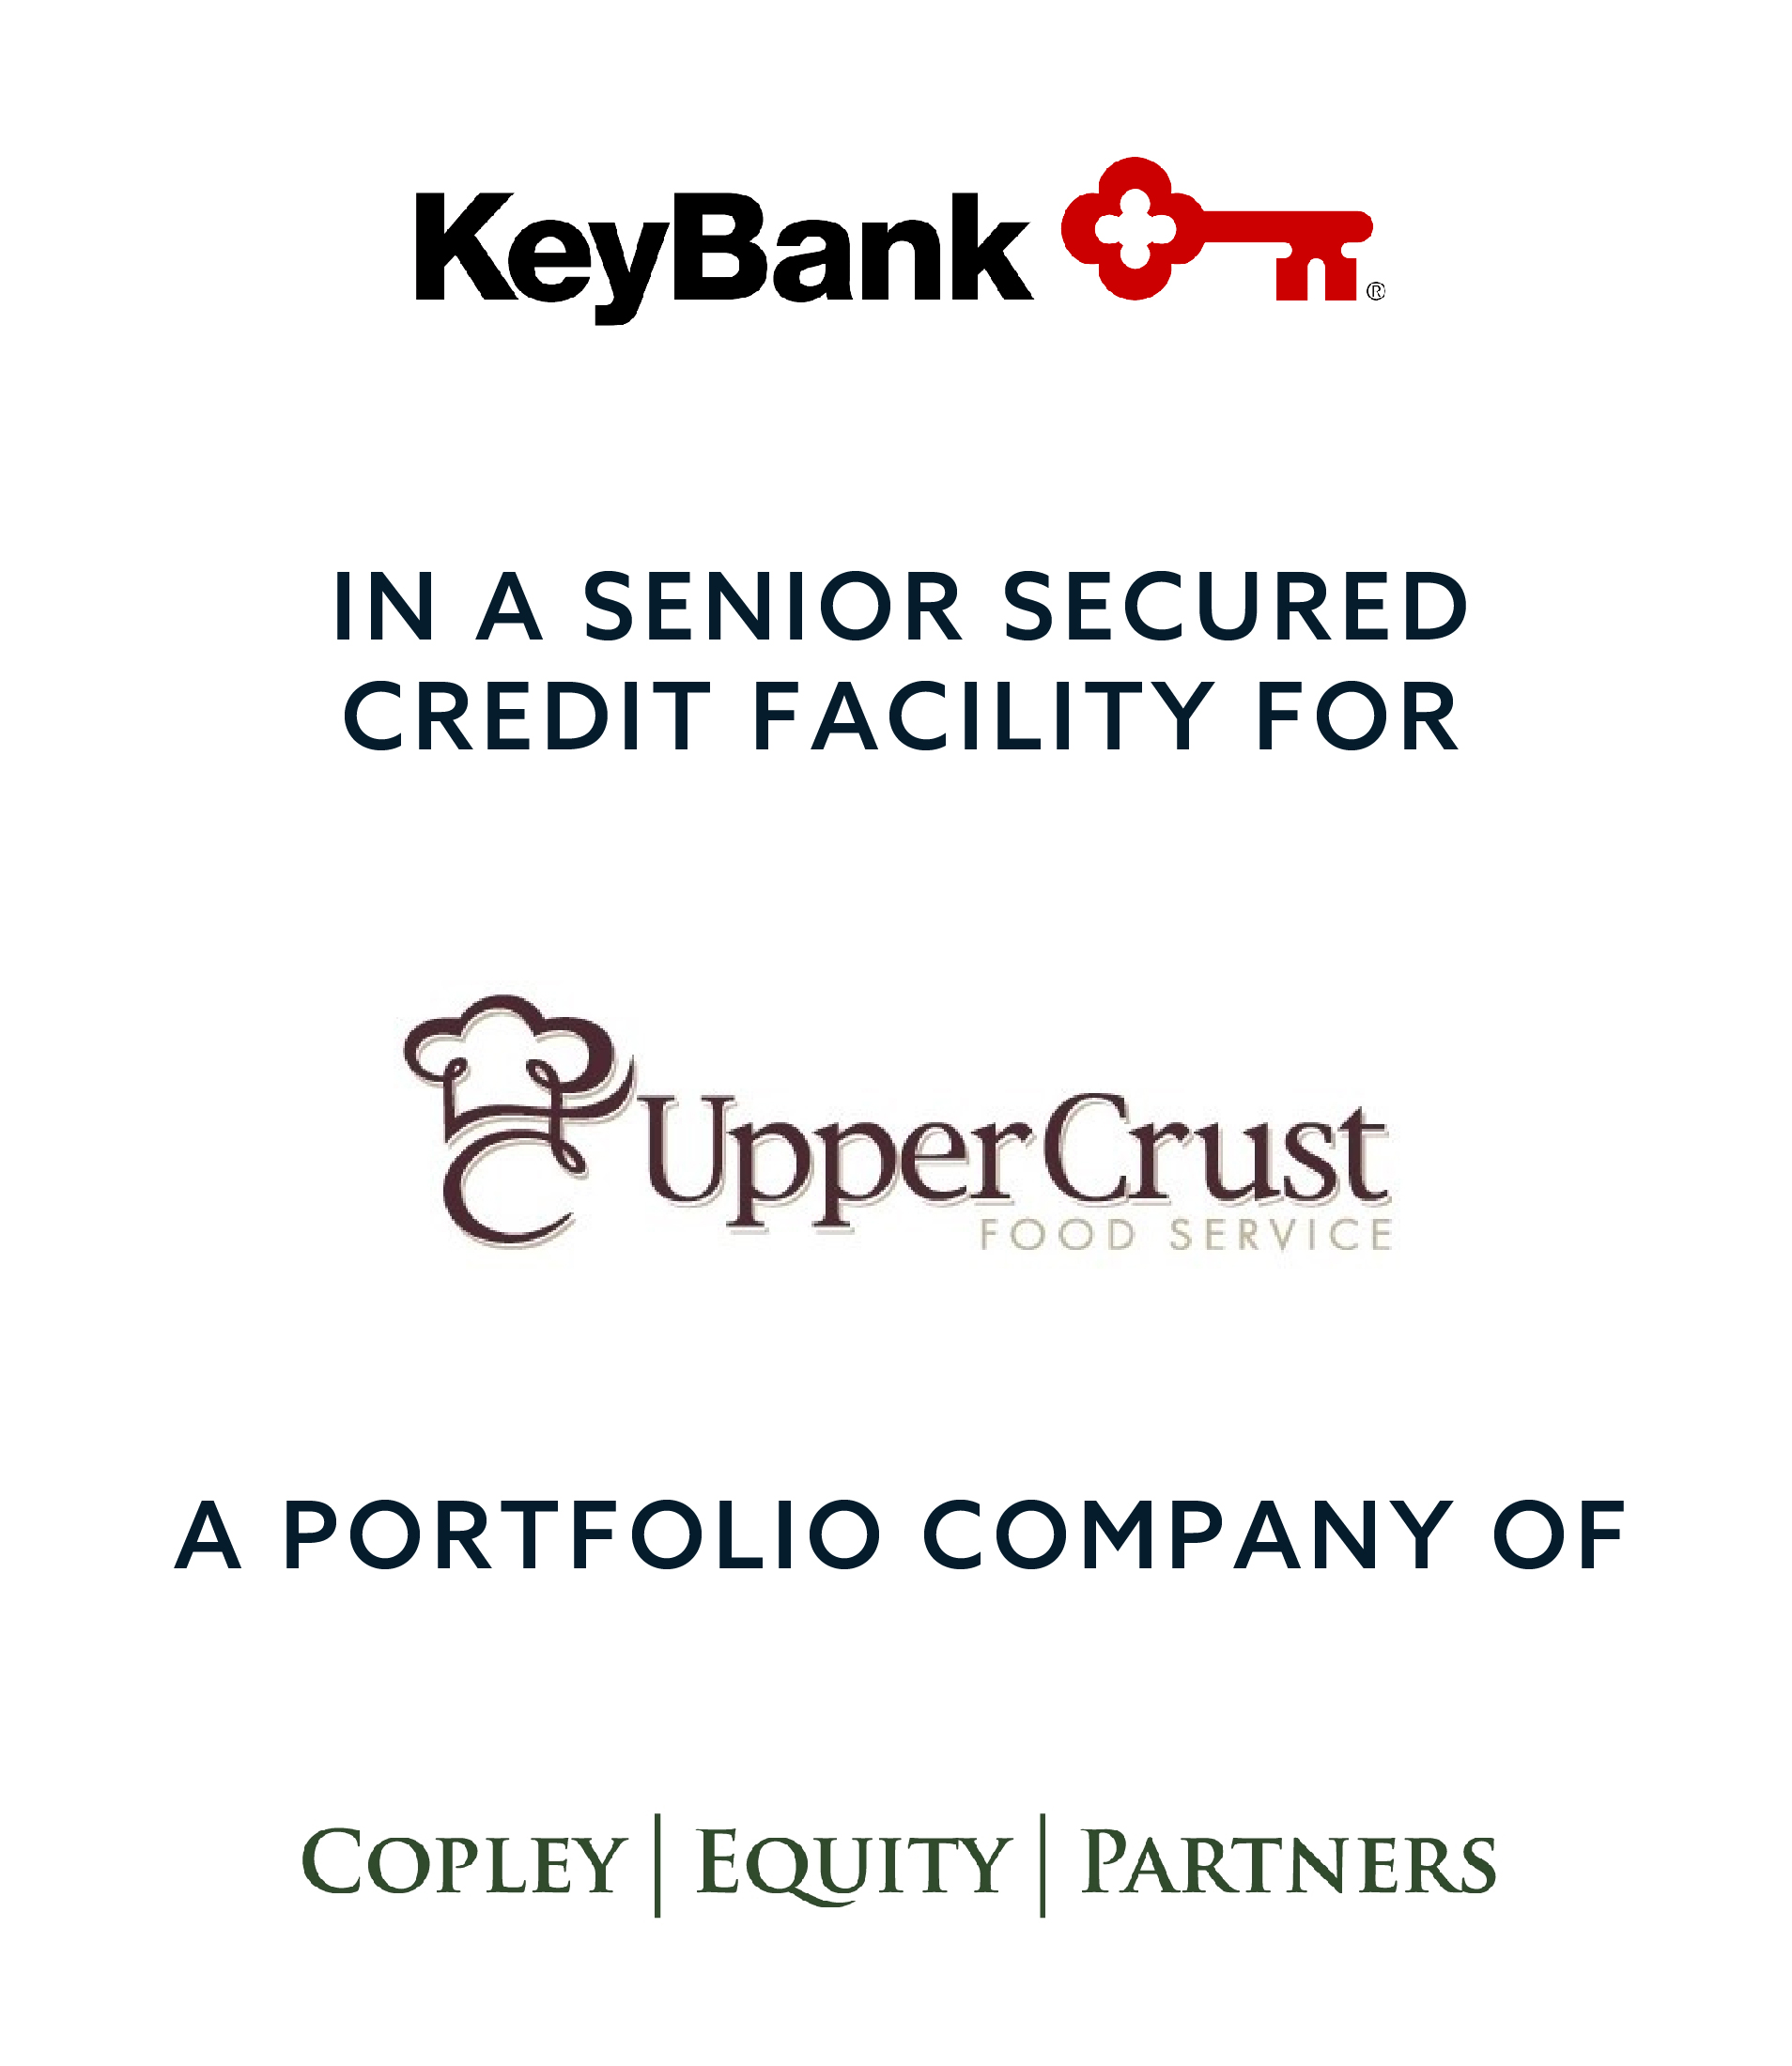 KeyBank-Upercrust-CopleyEquity